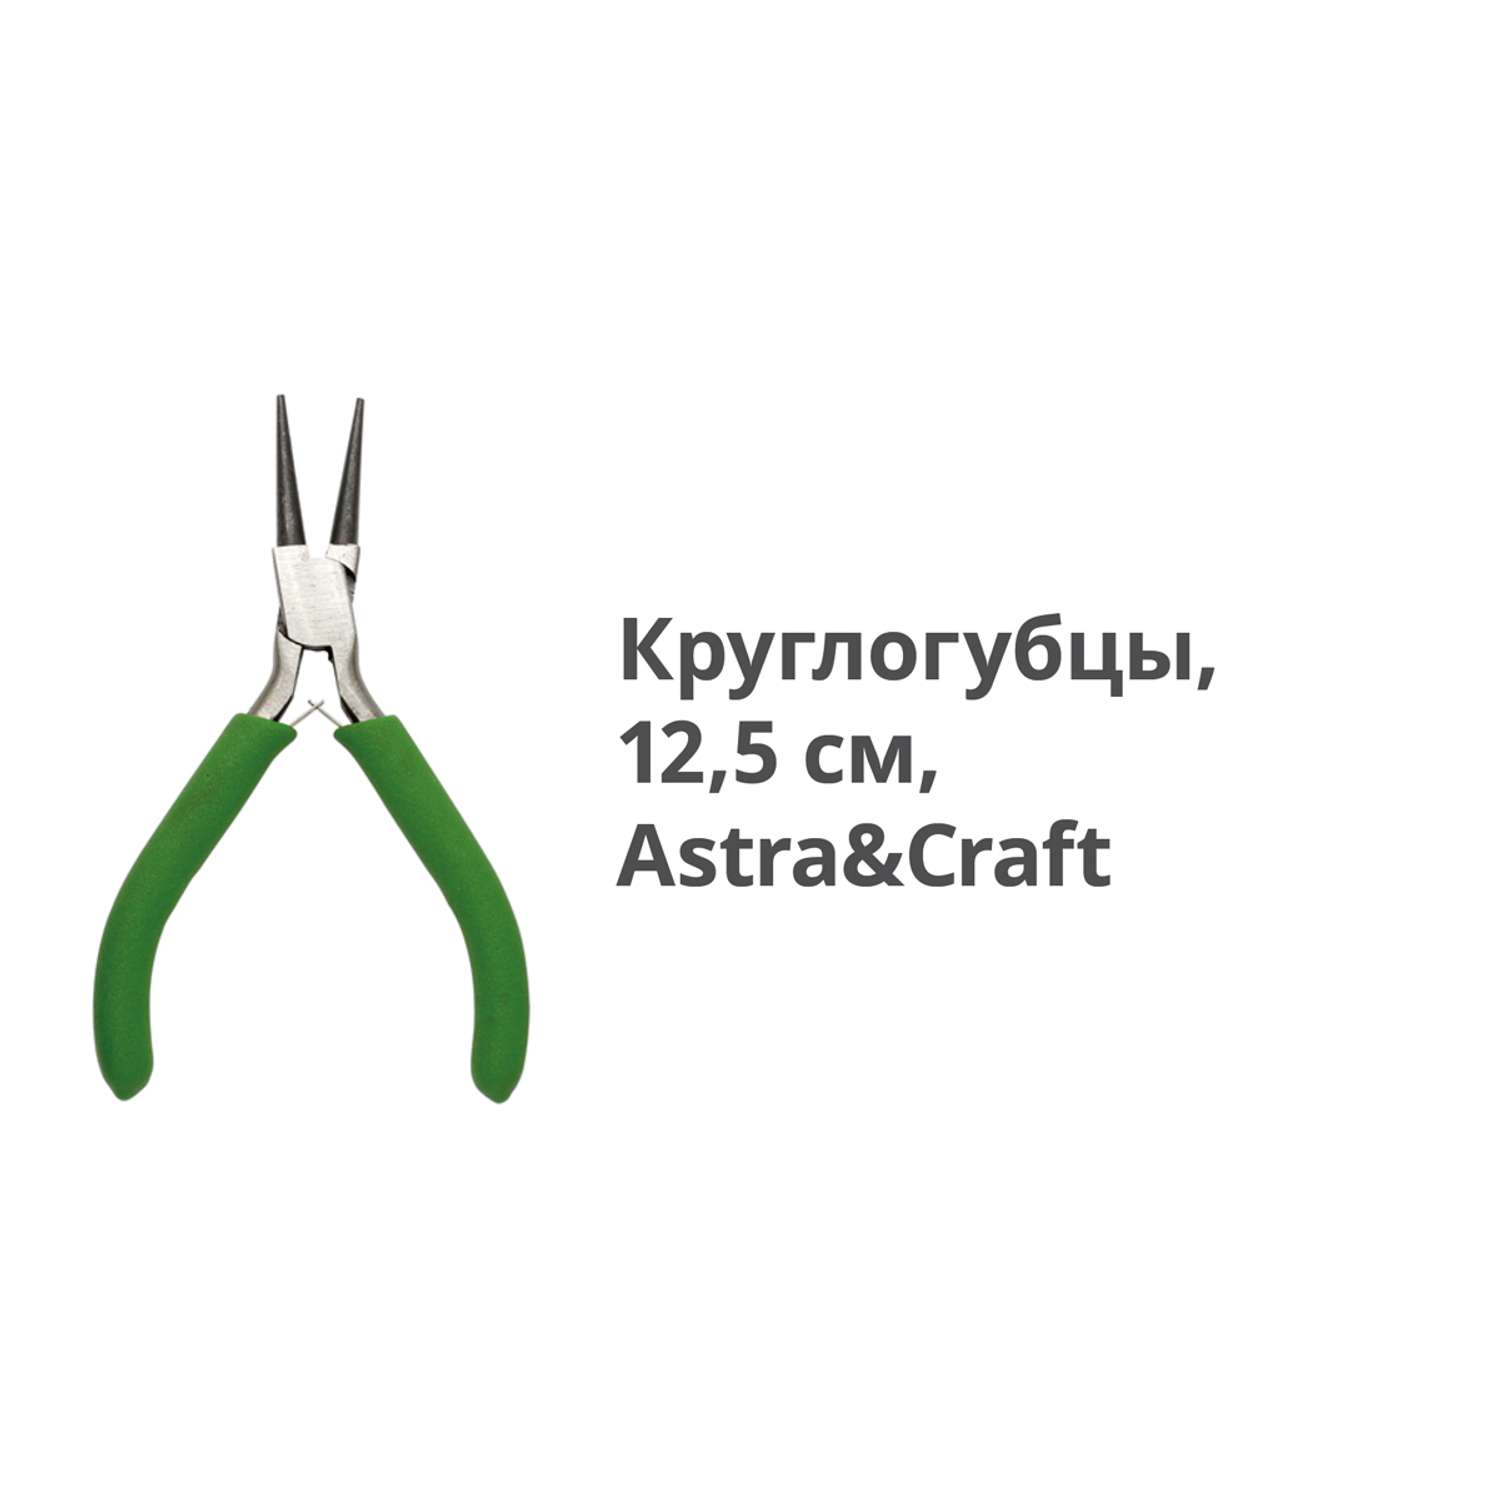 Круглогубцы Astra Craft для сгибания проволки и пластин - фото 2